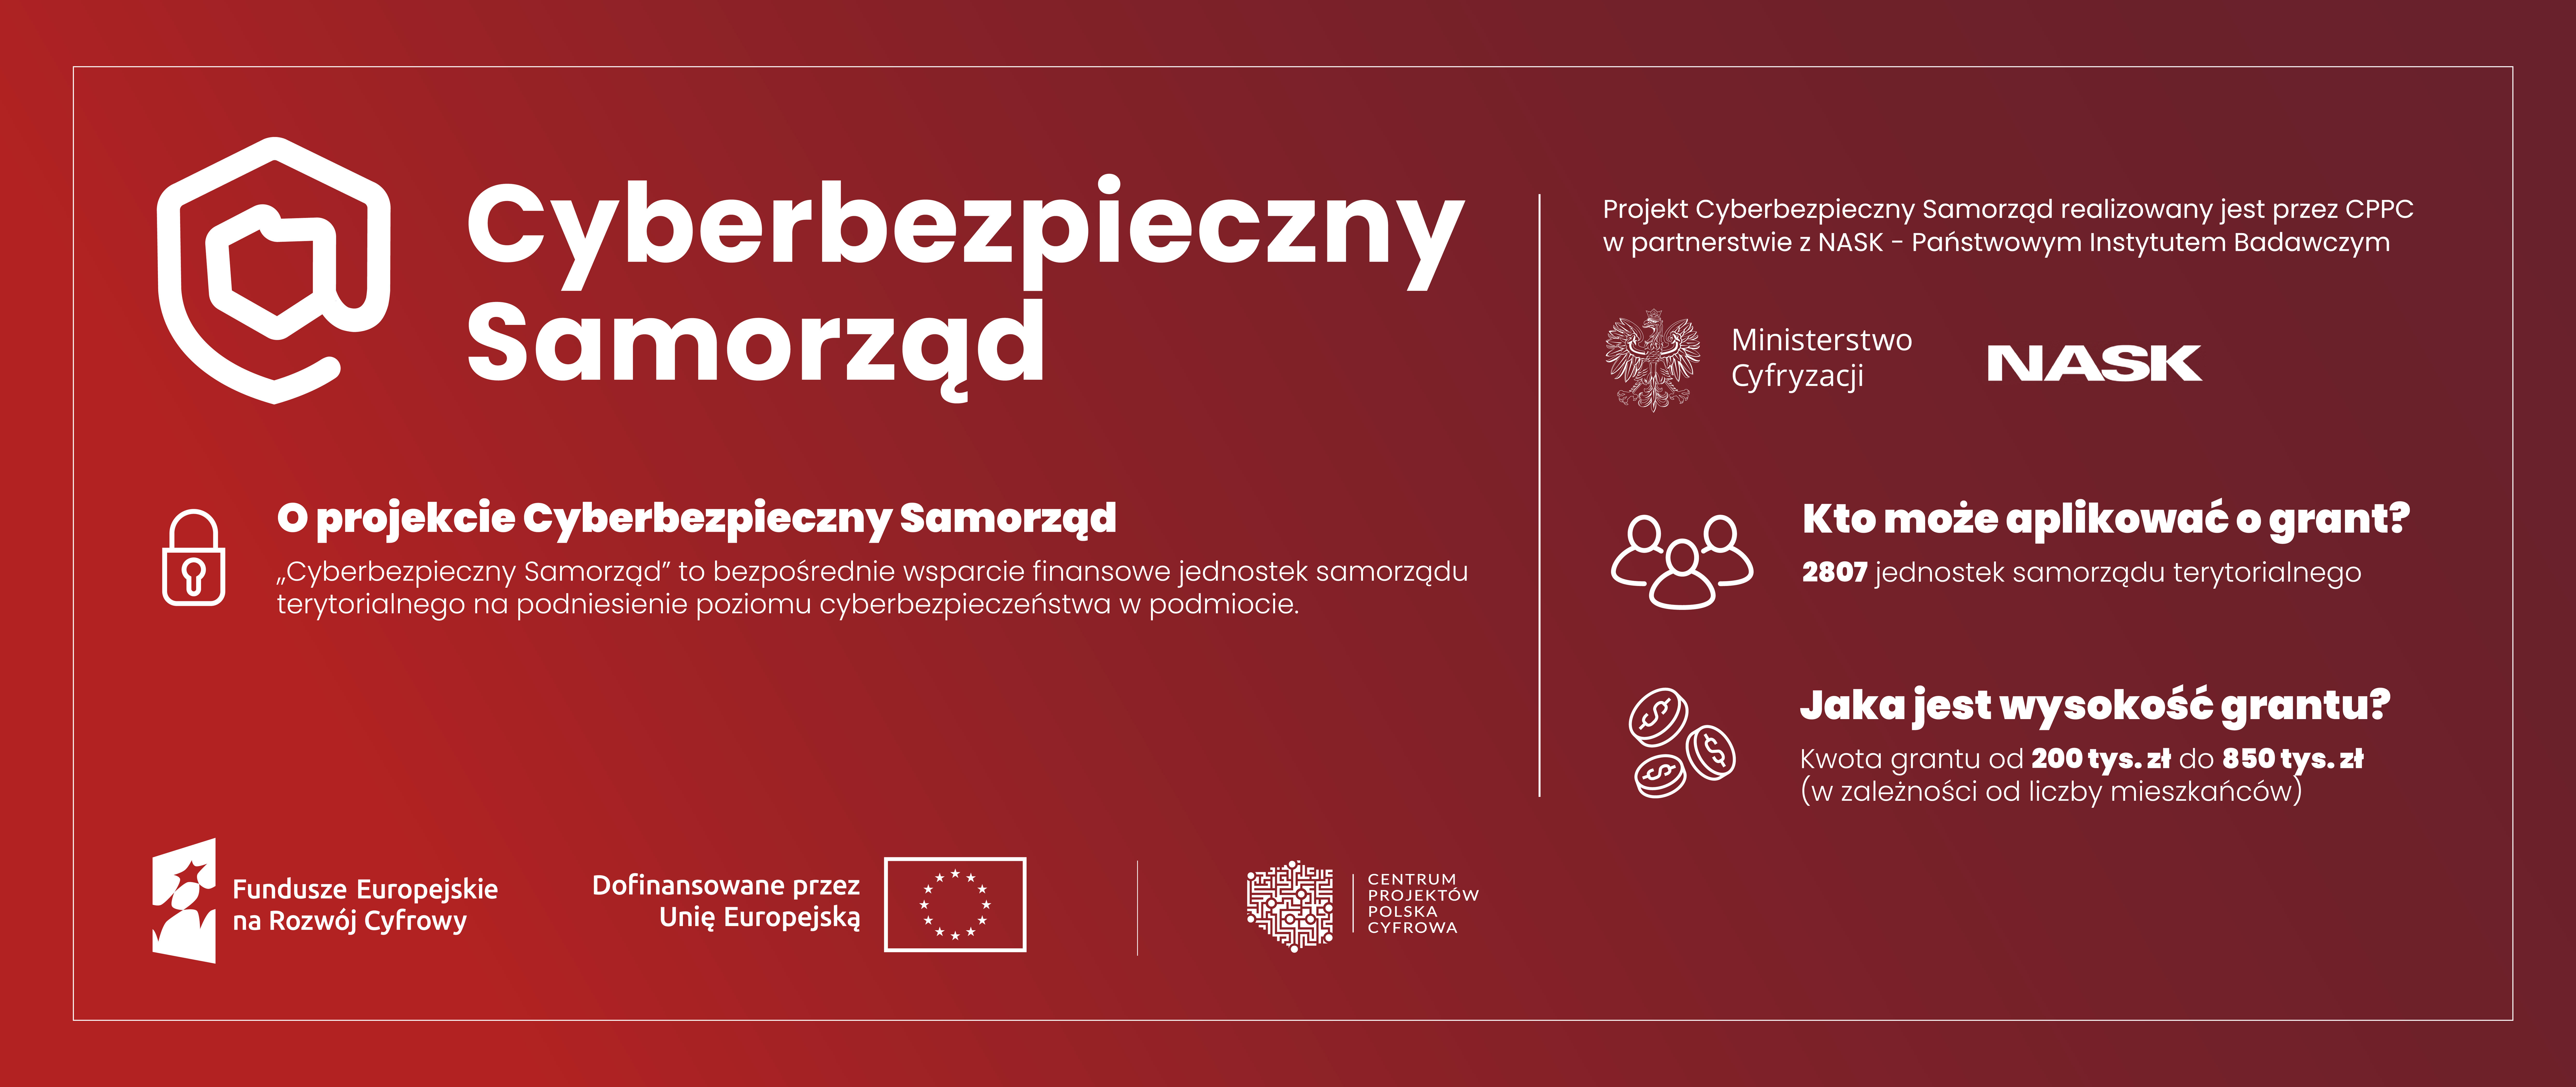 Zdjęcie przedstawia baner z informacjami o projekcie "Cyberbezpieczny Samorząd", finansowanym przez UE, z logo projektu, sponsorów i pytaniem o jakość hasła.